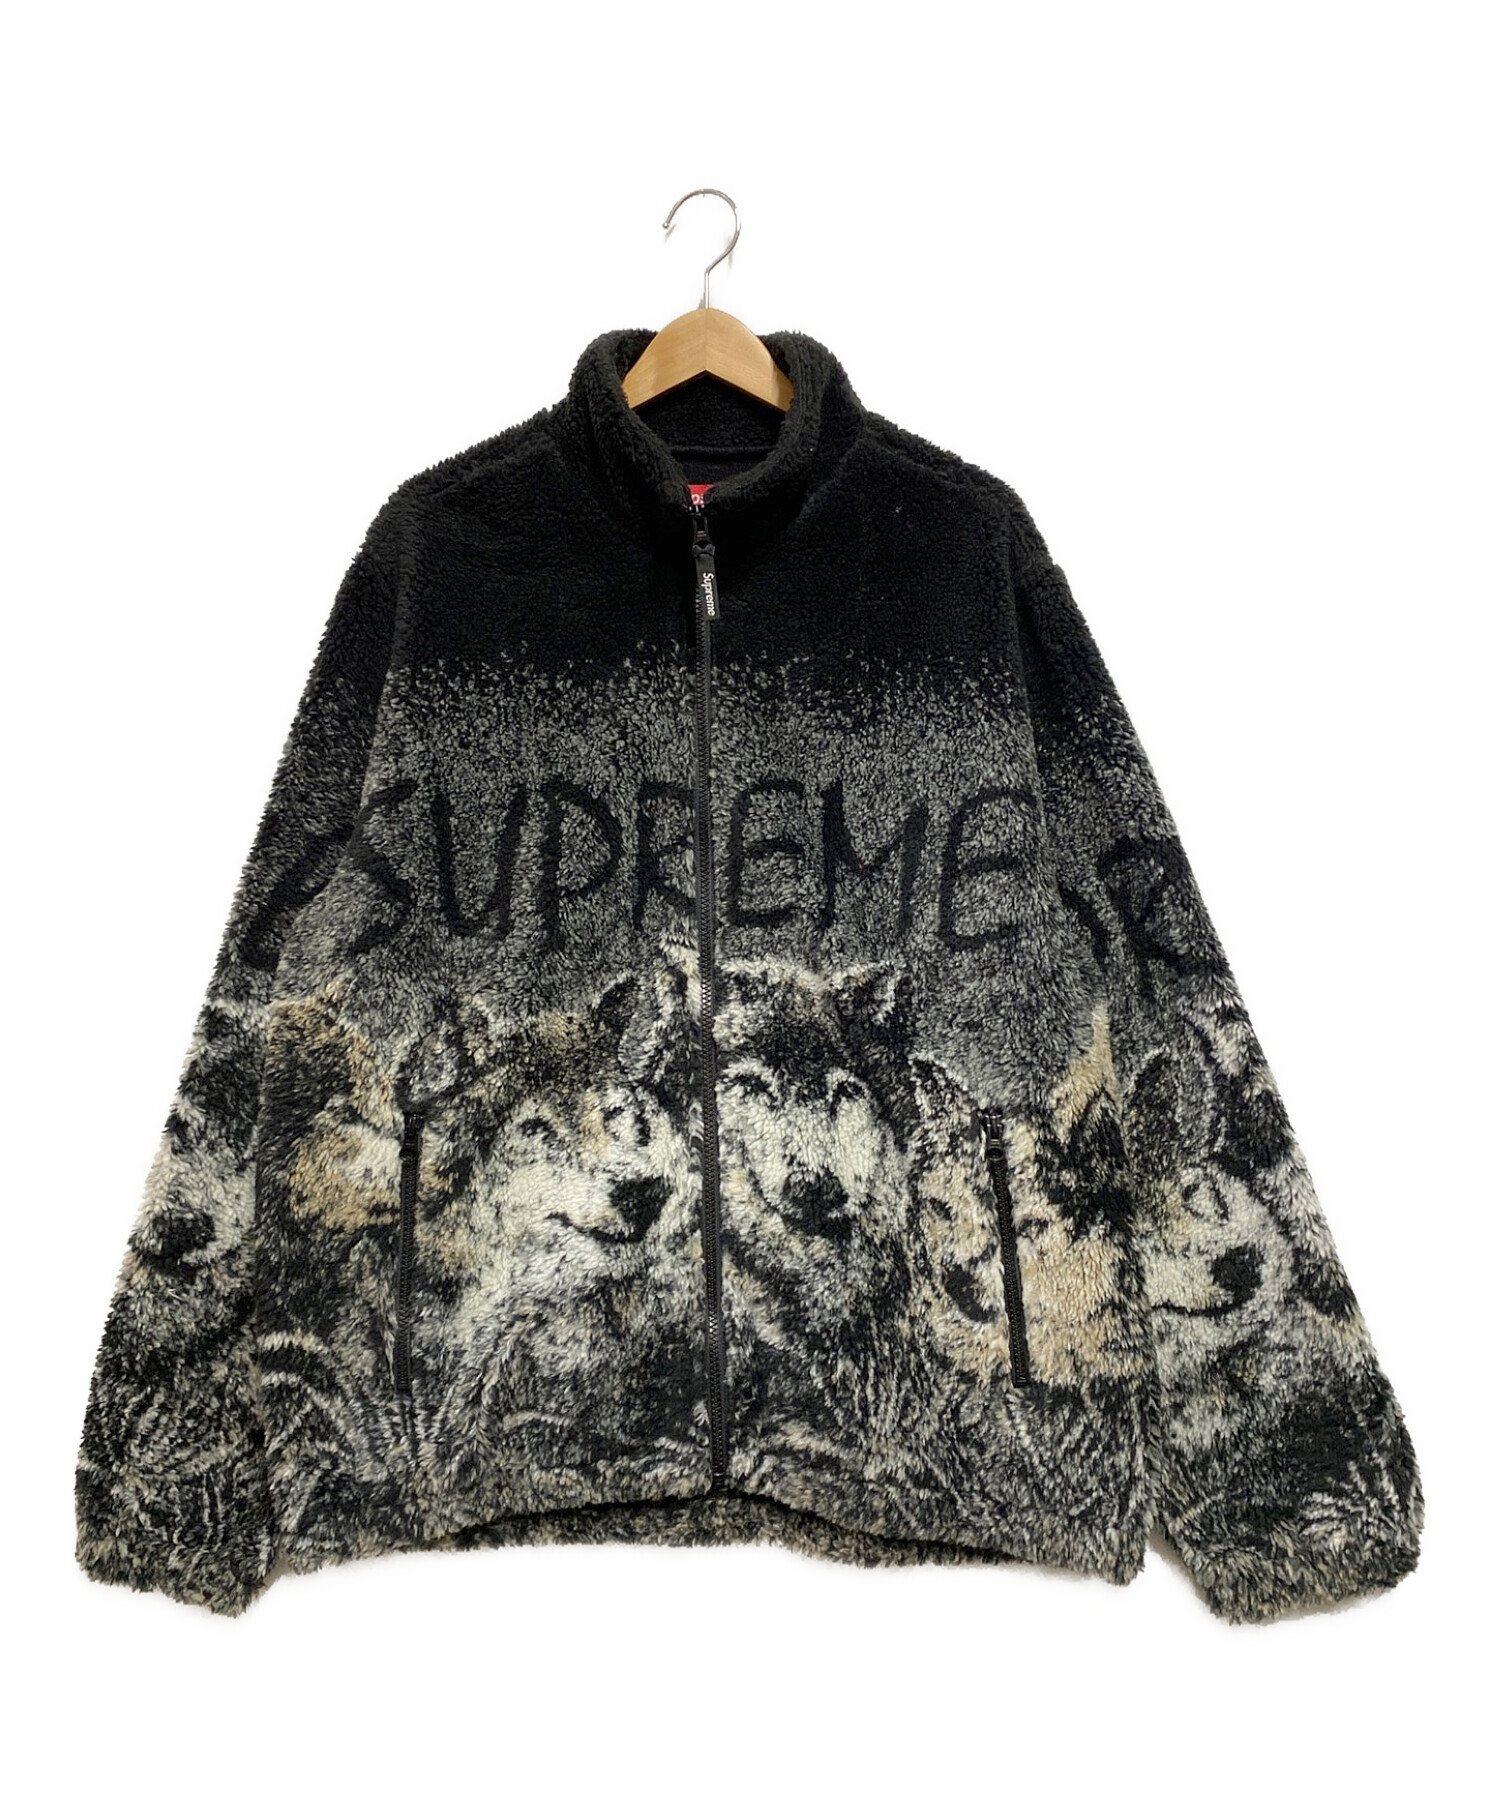 Supreme wolf fleece jacket